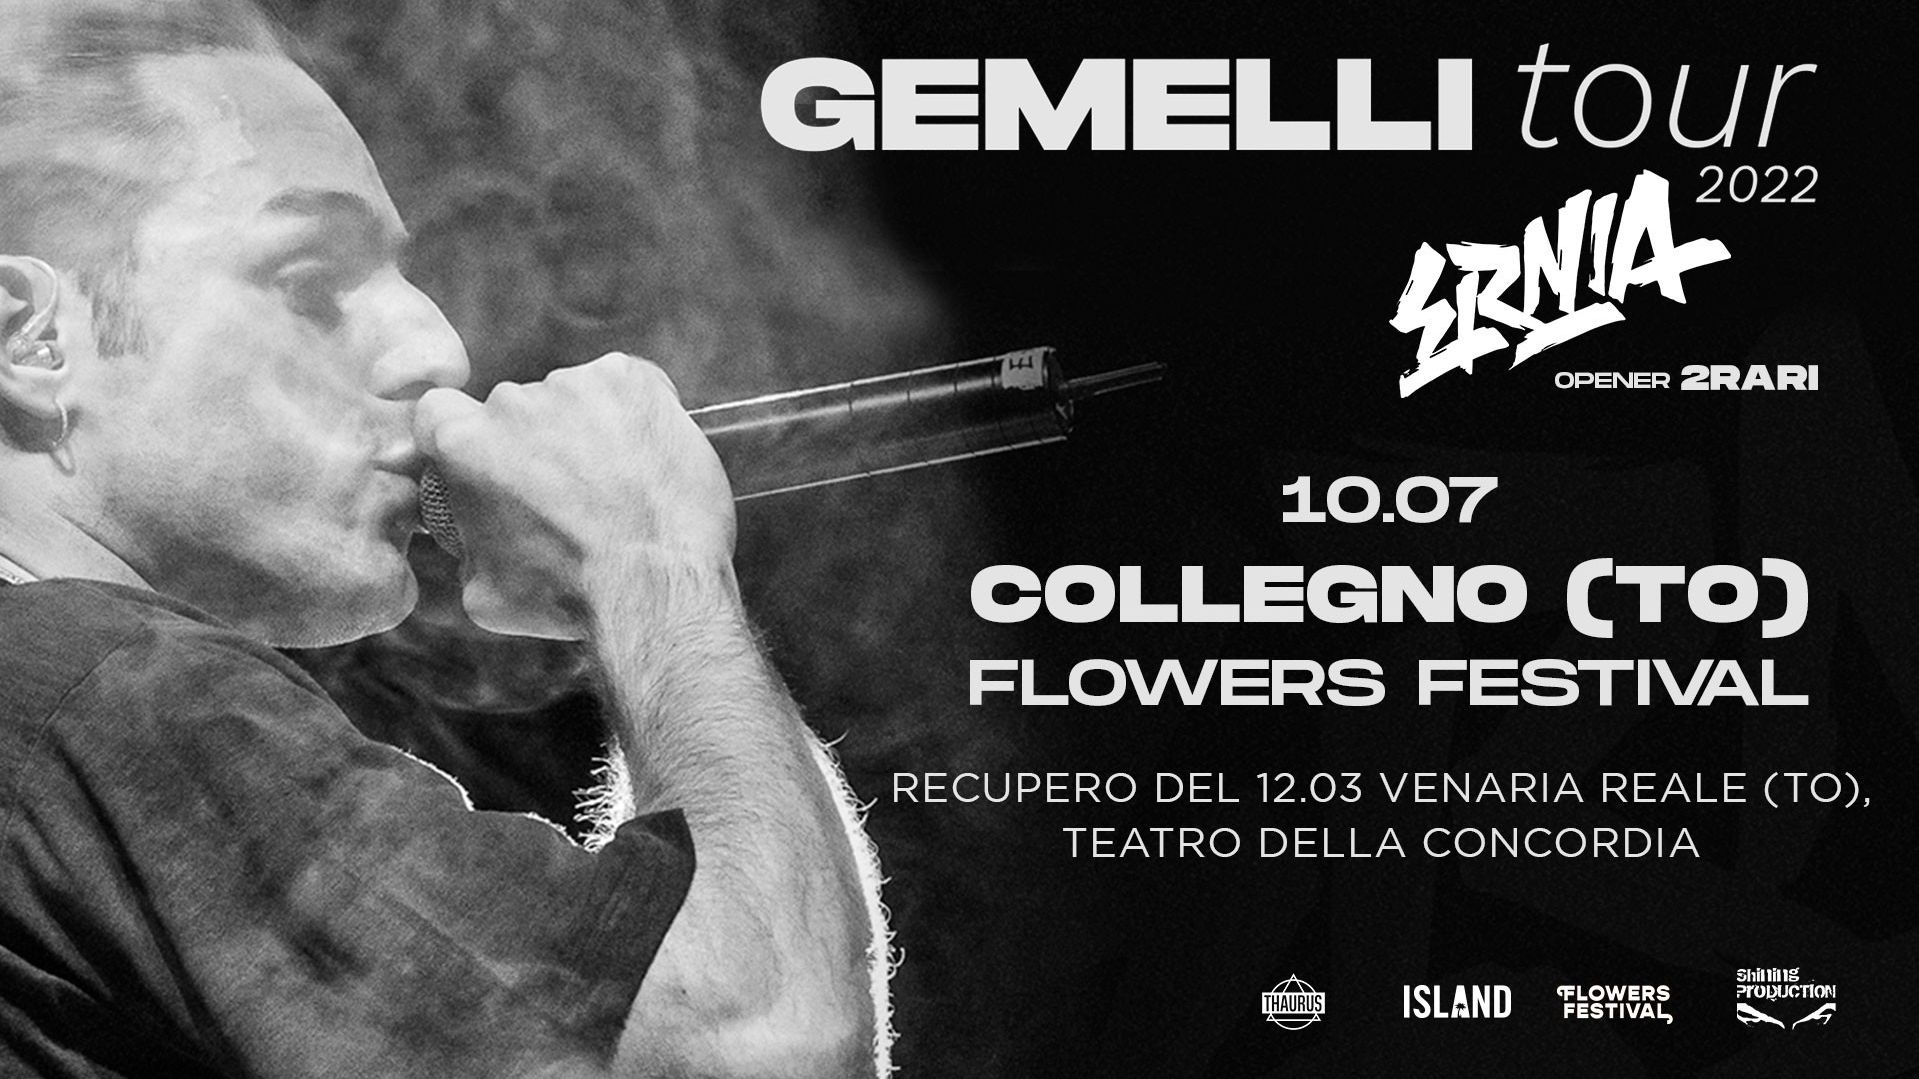 Ernia | Gemelli Tour 2022